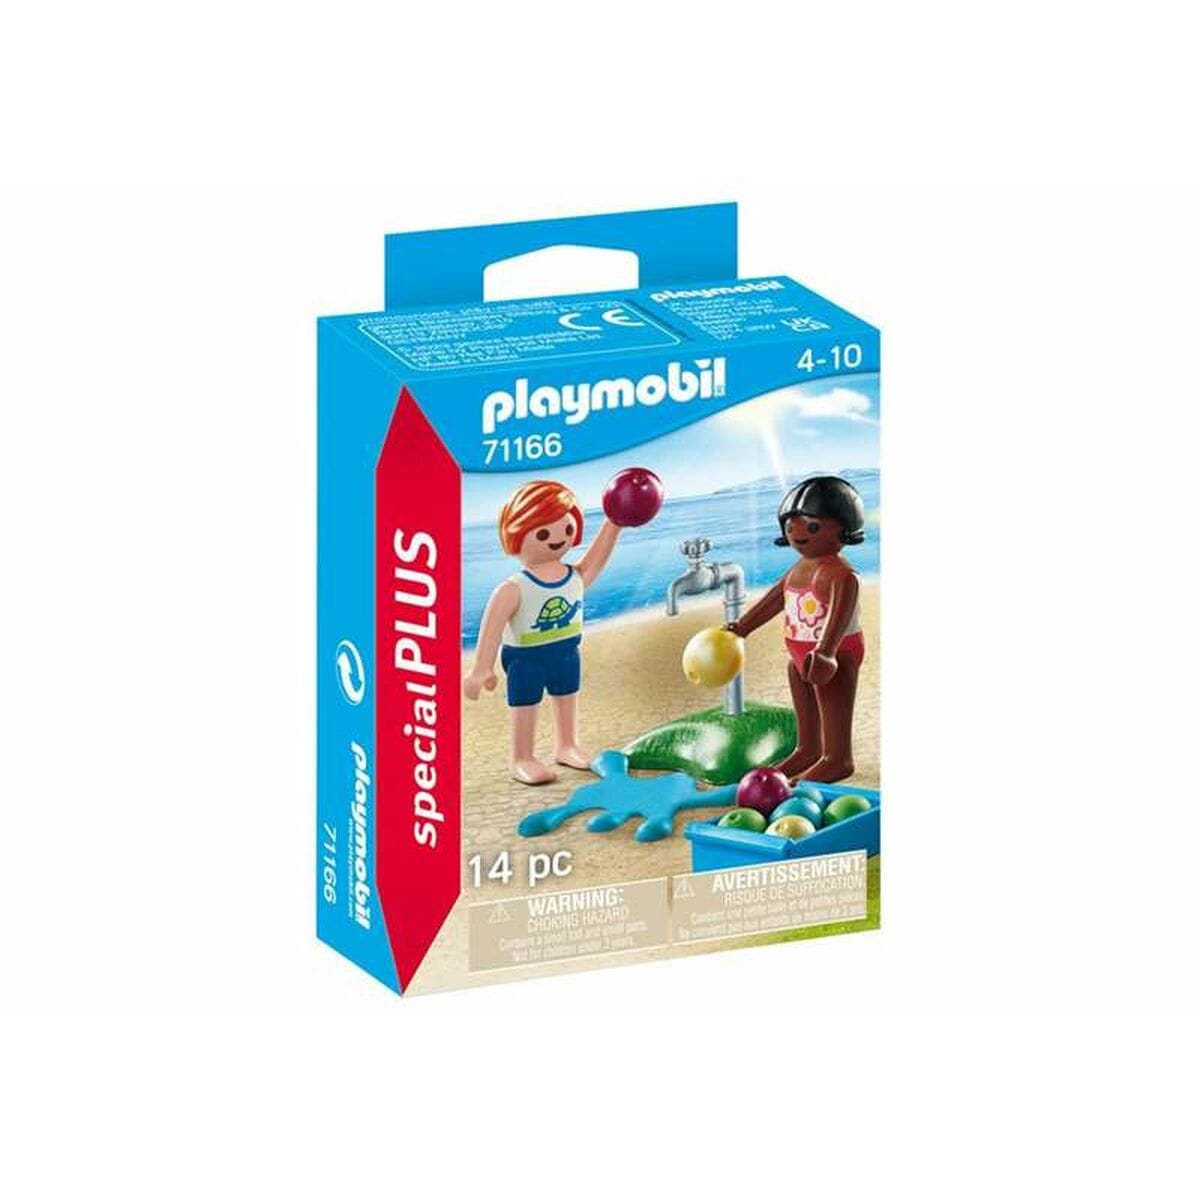 Playmobil Spielzeug | Kostüme > Spielzeug und Spiele > Weiteres spielzeug Playset Playmobil 71166 Special PLUS Kids with Water Balloons 14 Teile